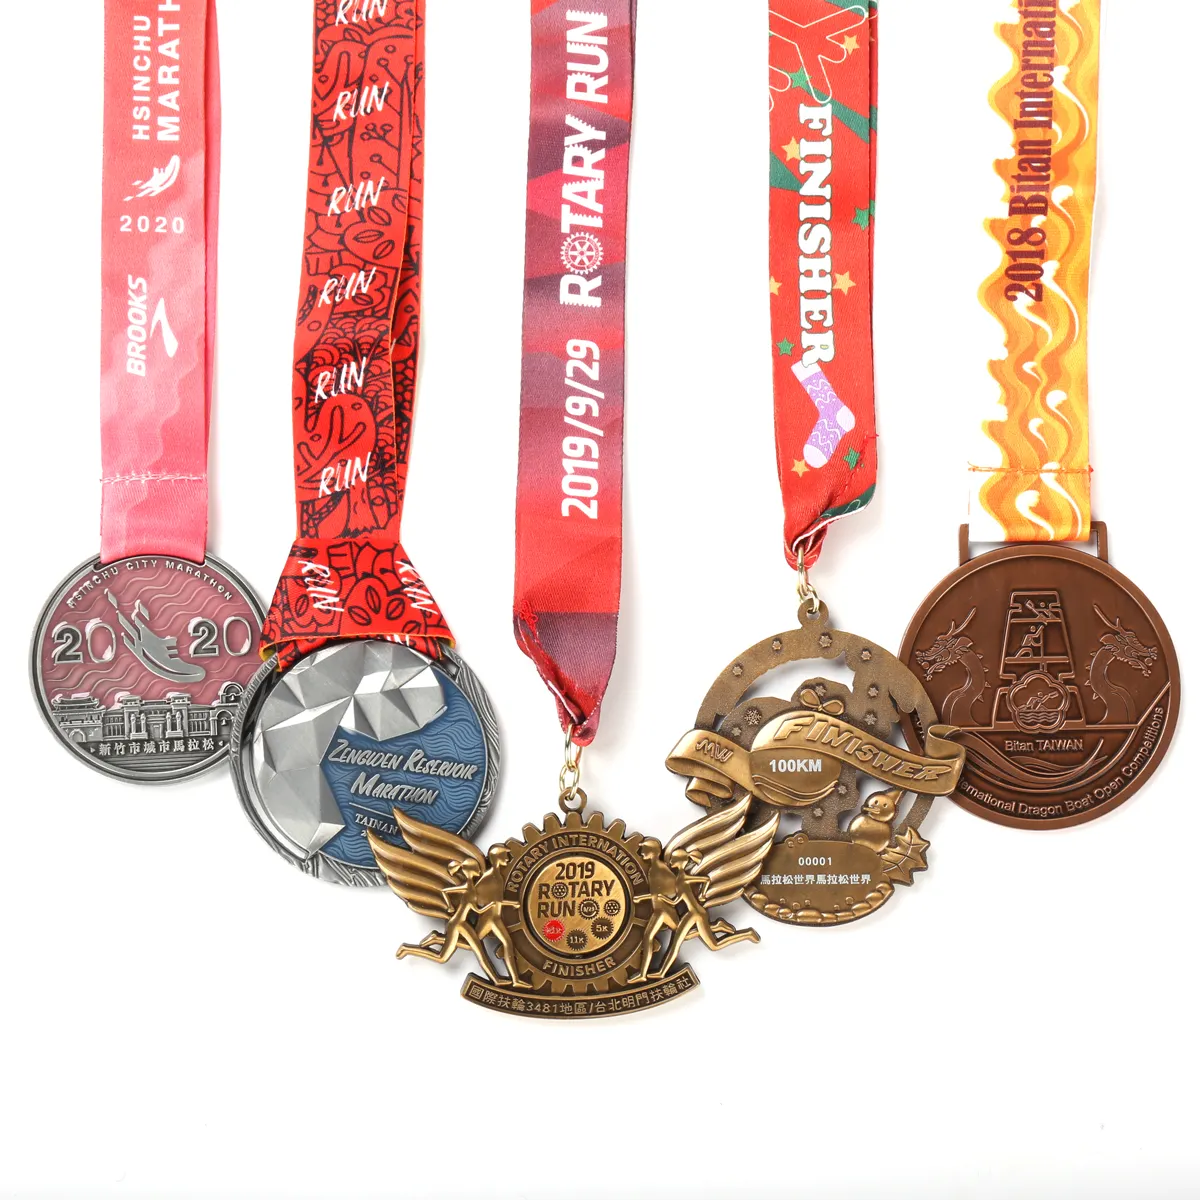 رخيصة مخصص لكرة القدم الذهب 3D شعار ميدالية 5K سباق الماراثون تشغيل المعادن حاوية مخصصة من الألومنيوم لكرة القدم الرياضة ميداليات جوائز مع الشريط